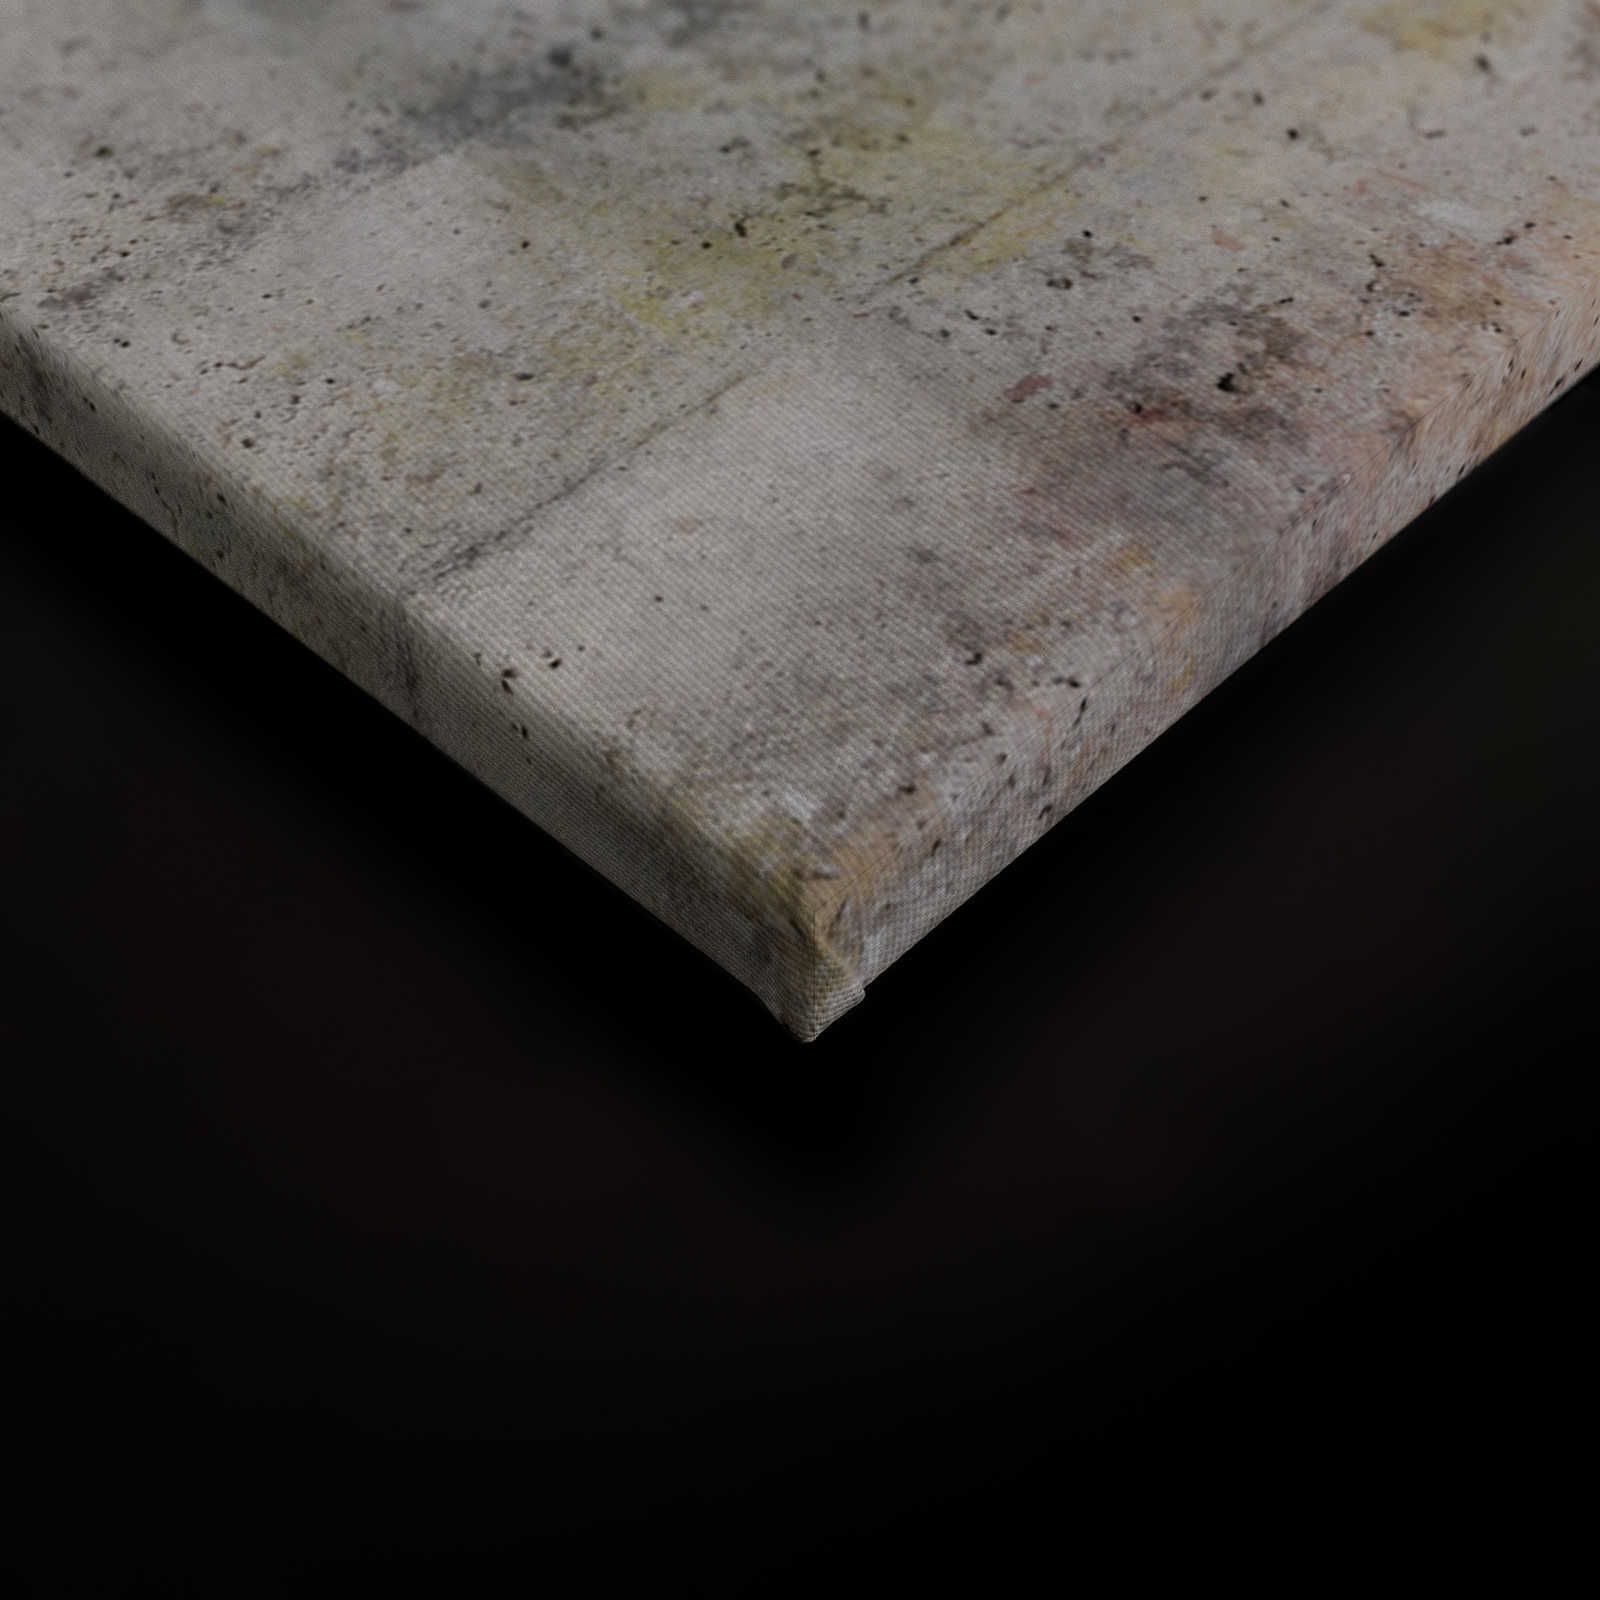             Tableau sur toile Aspect béton avec fissure - 1,20 m x 0,80 m
        